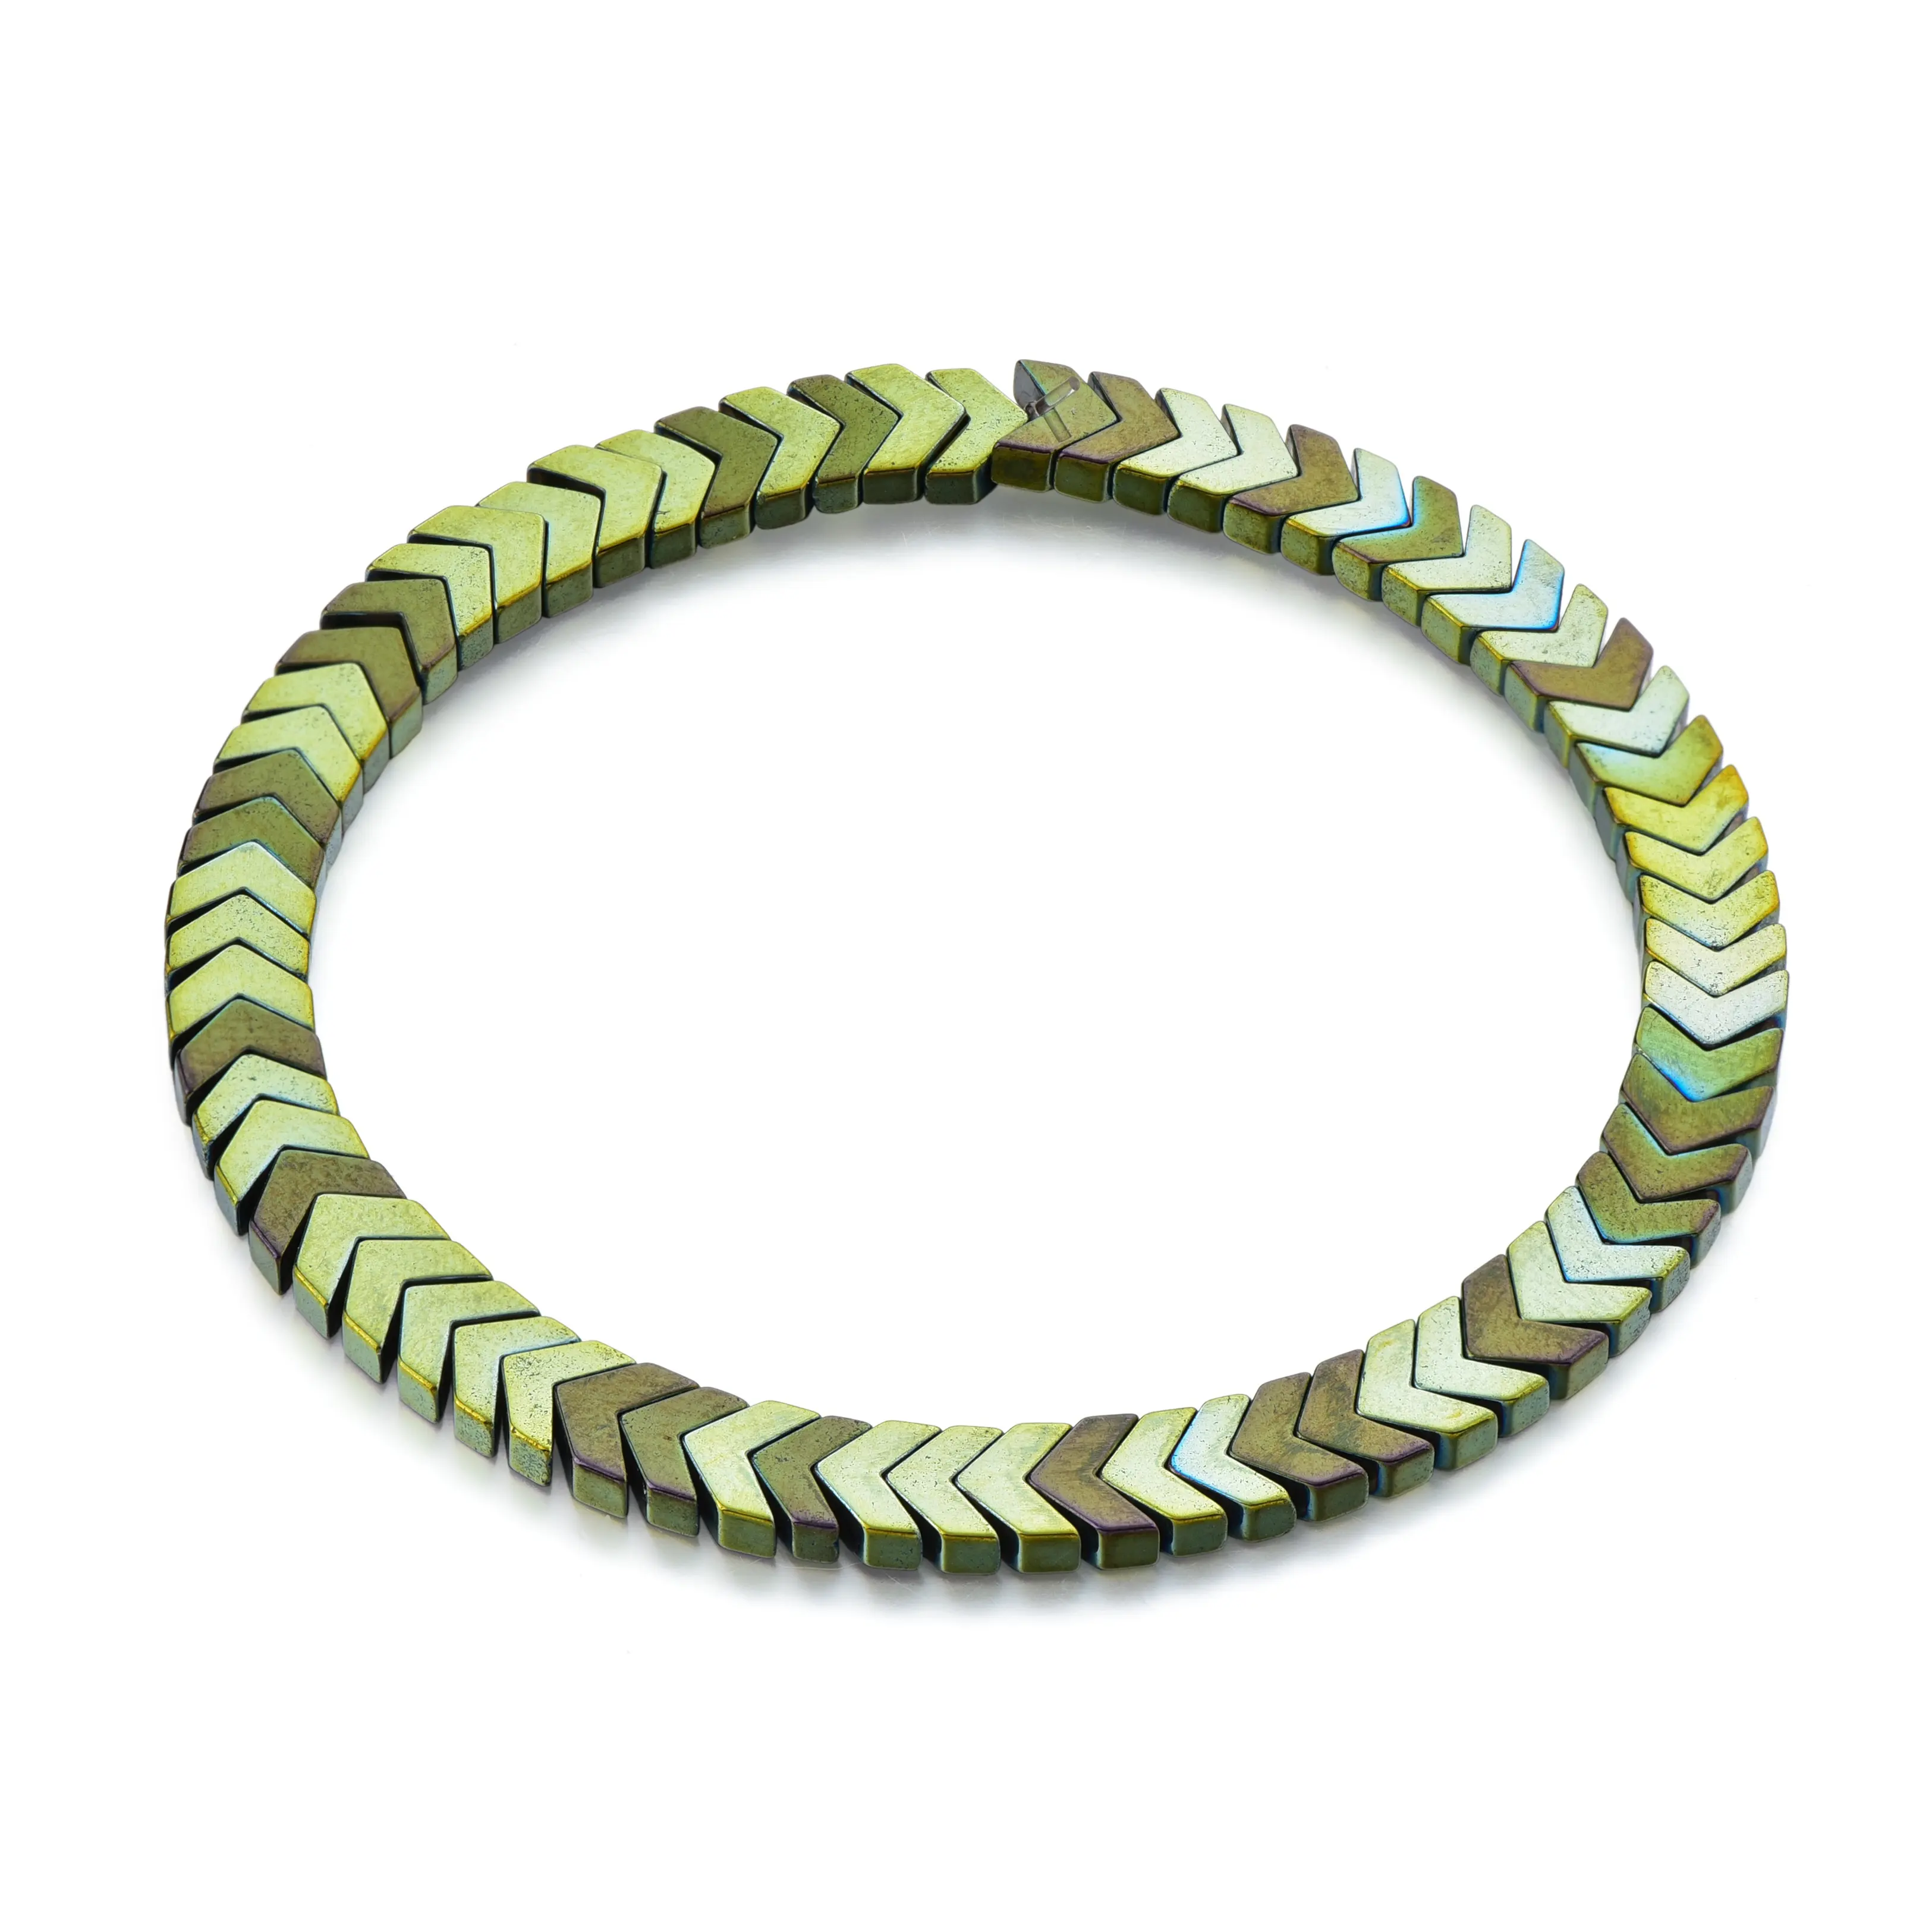 Longway pulseiras personalizadas com pedra de hematita em v, coloridas em formato de v, para homens e mulheres